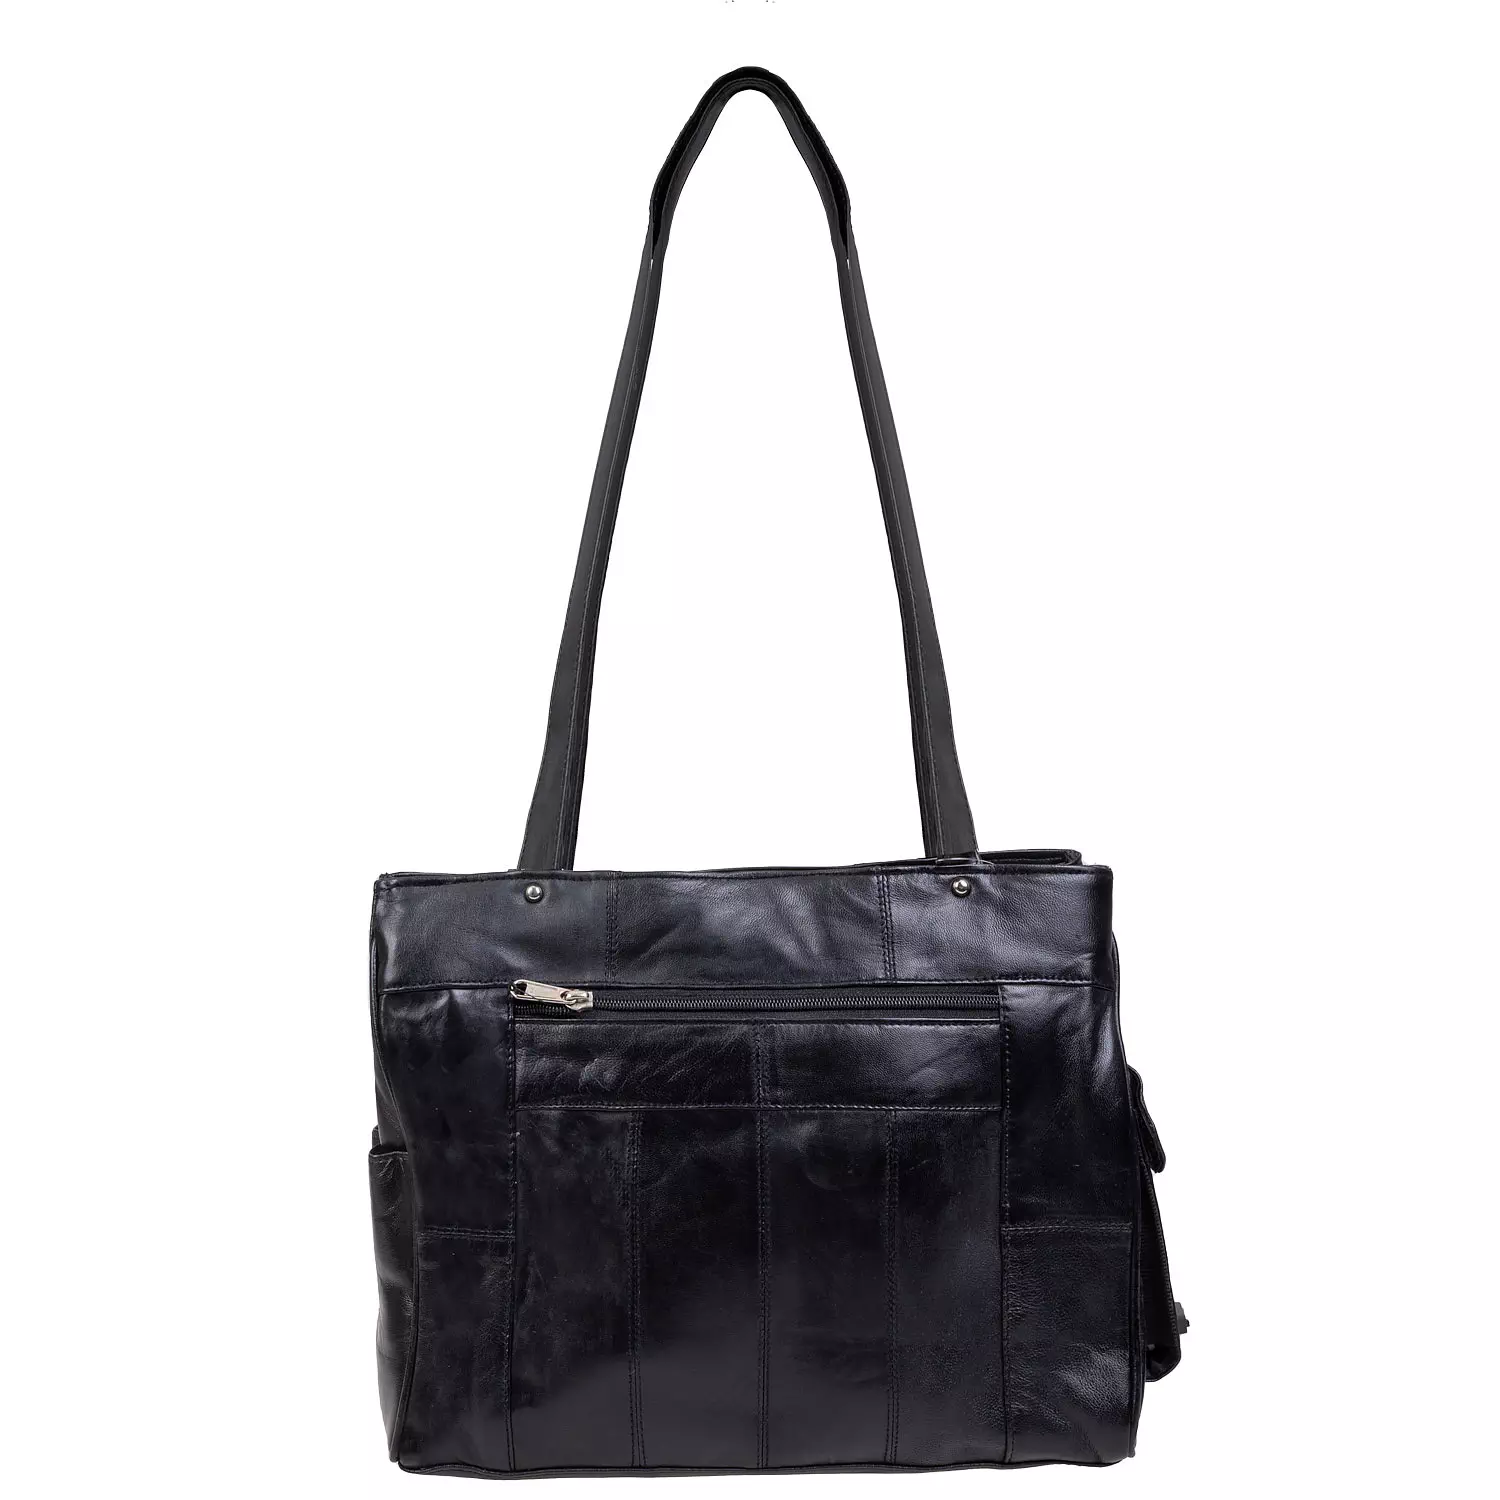 Women's handbag tote, black